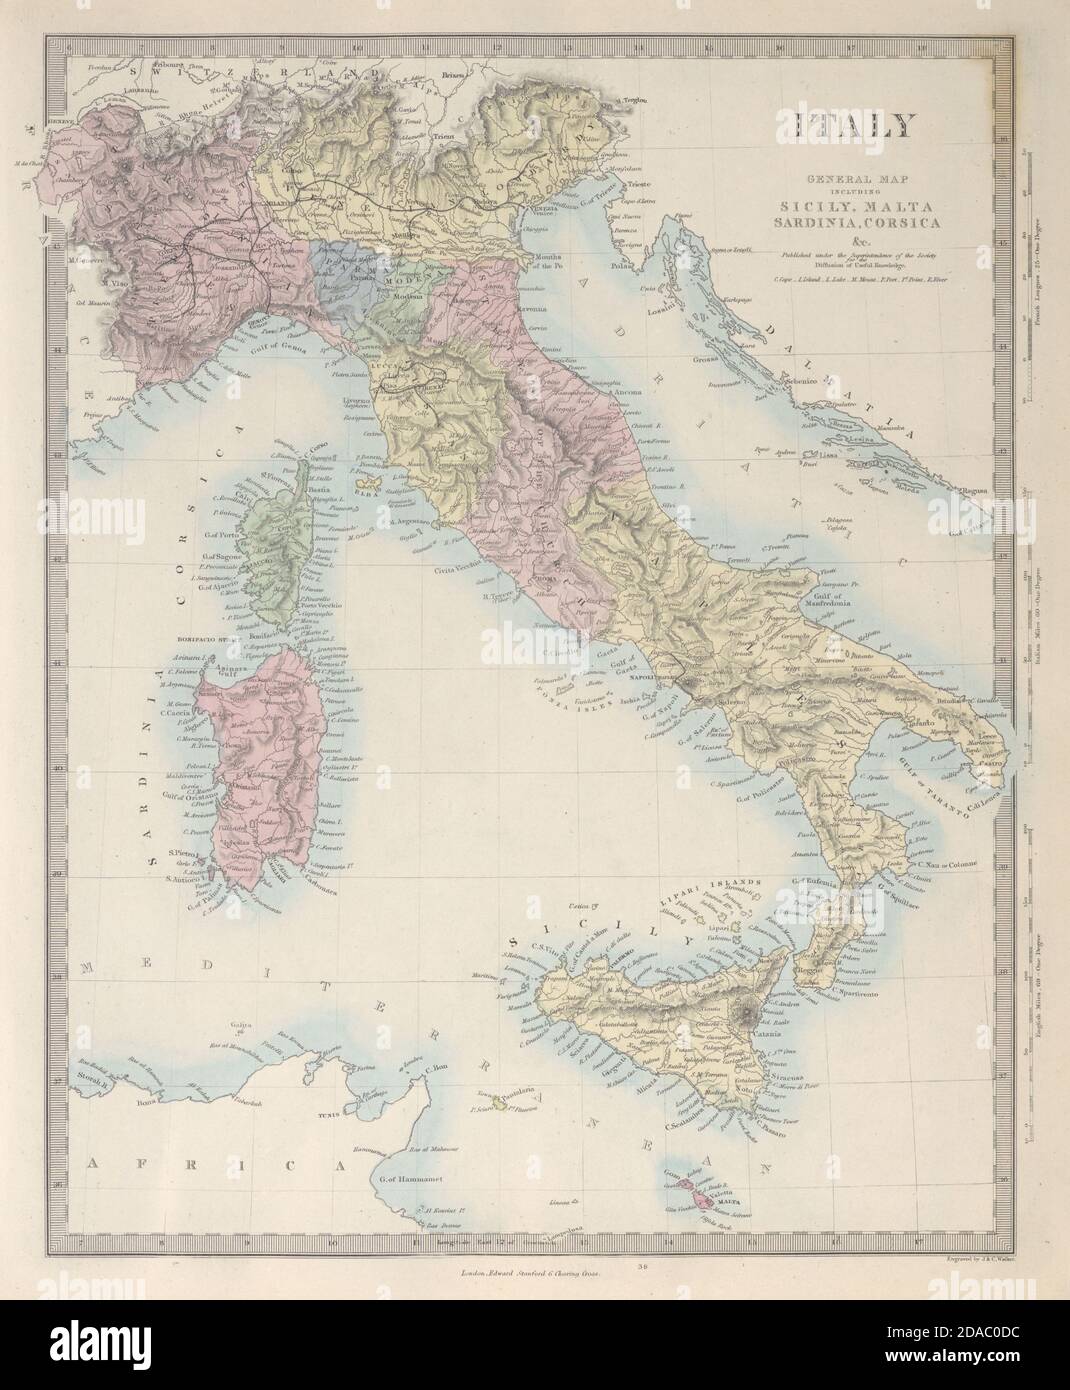 MAPA general DE ITALIA. Sicilia Cerdeña Córcega. Incluye Savoie y Niza. SDUK 1857 Foto de stock